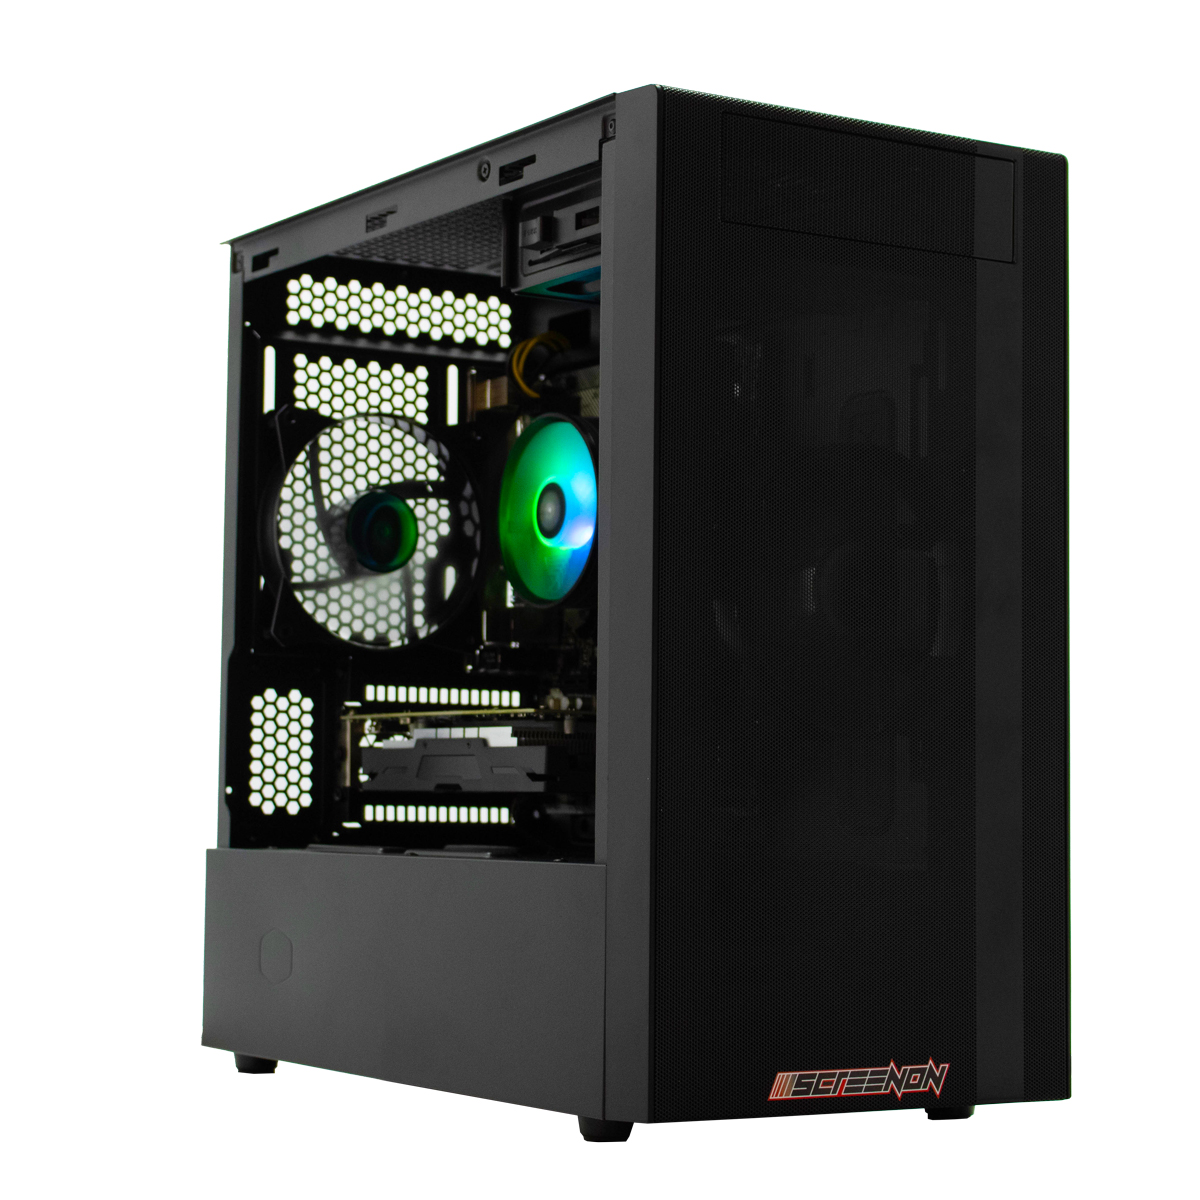 SCREENON Z401135 – V1, Gaming RAM, Graphics PC, 8 GB 610 240 GB Intel UHD SSD